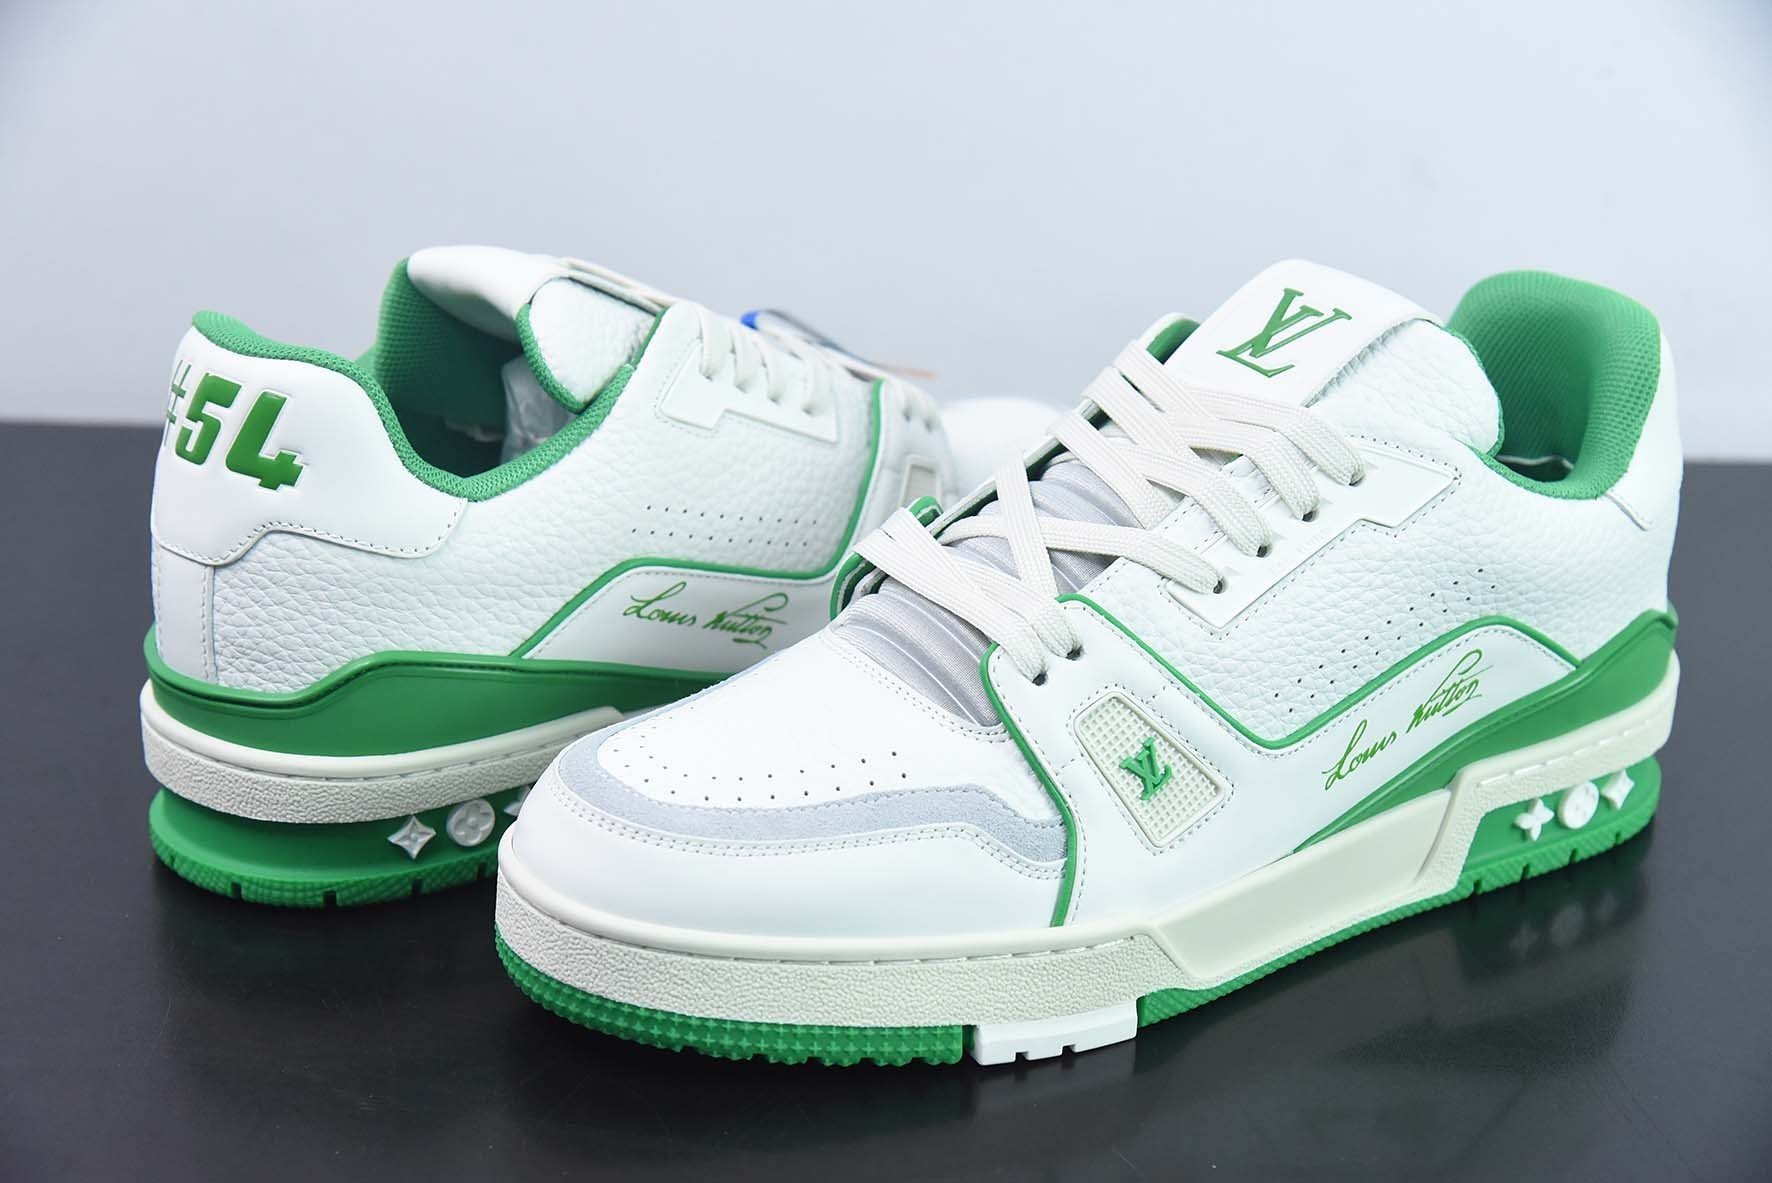 Giày Louis Vuitton White Green Siêu Cấp #5L Size 35-44 MLYI1V